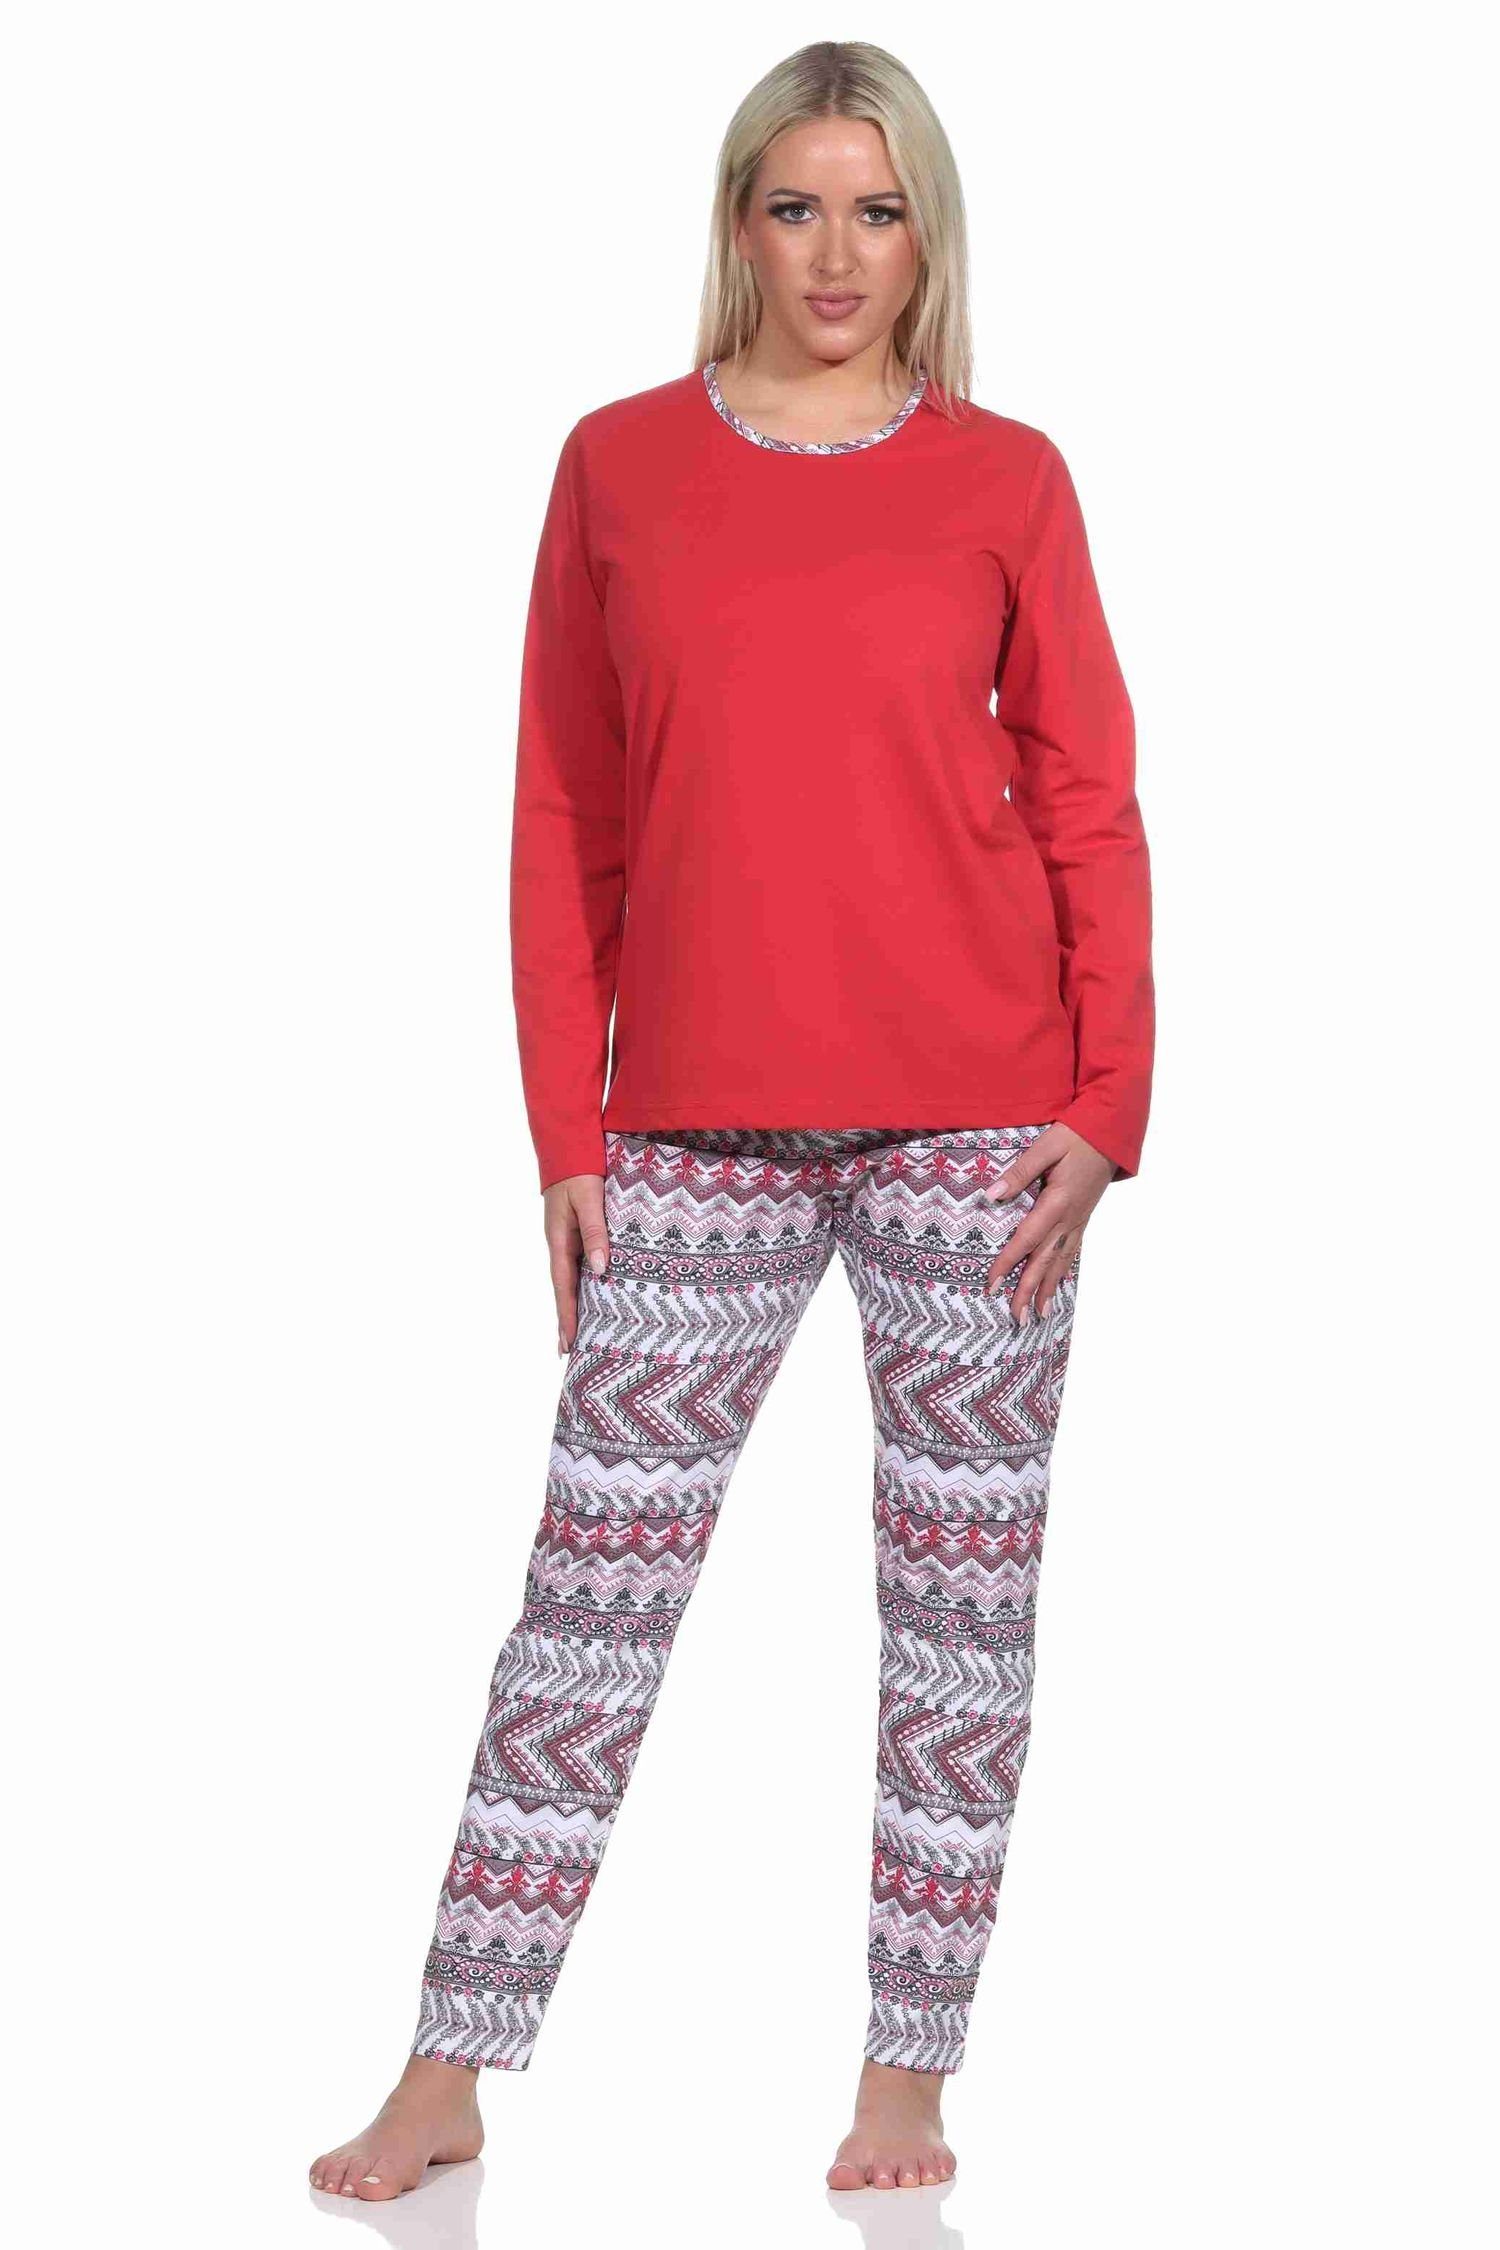 Damen Normann Ethnolook wunderschönen Pyjama Schlafanzug im langarm rot